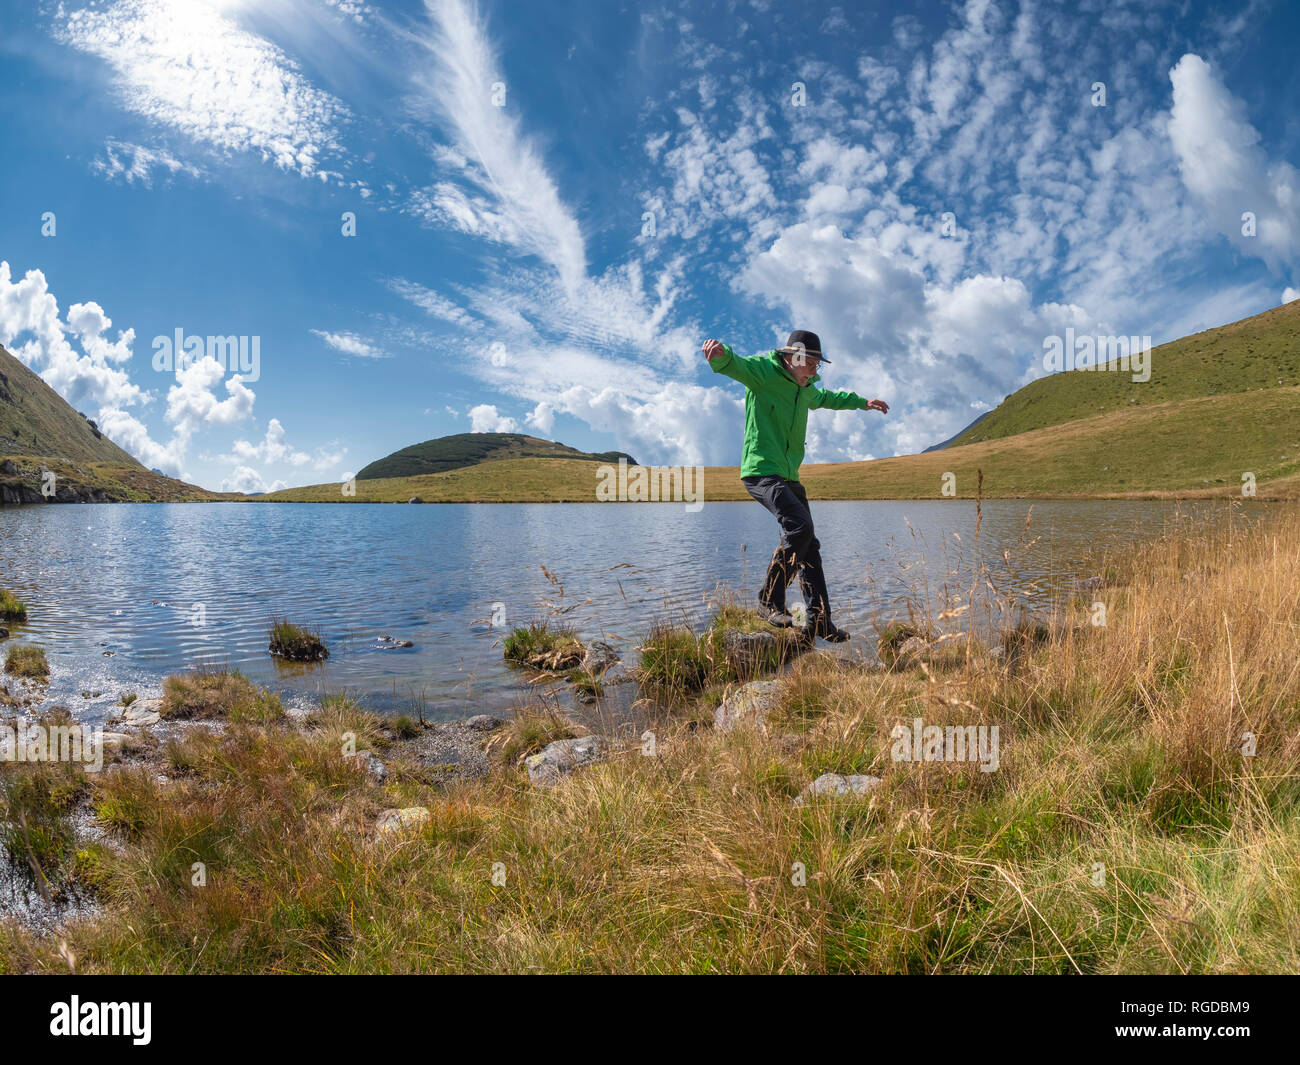 Italia, Lombardía, caminante saltando en lakeside Foto de stock